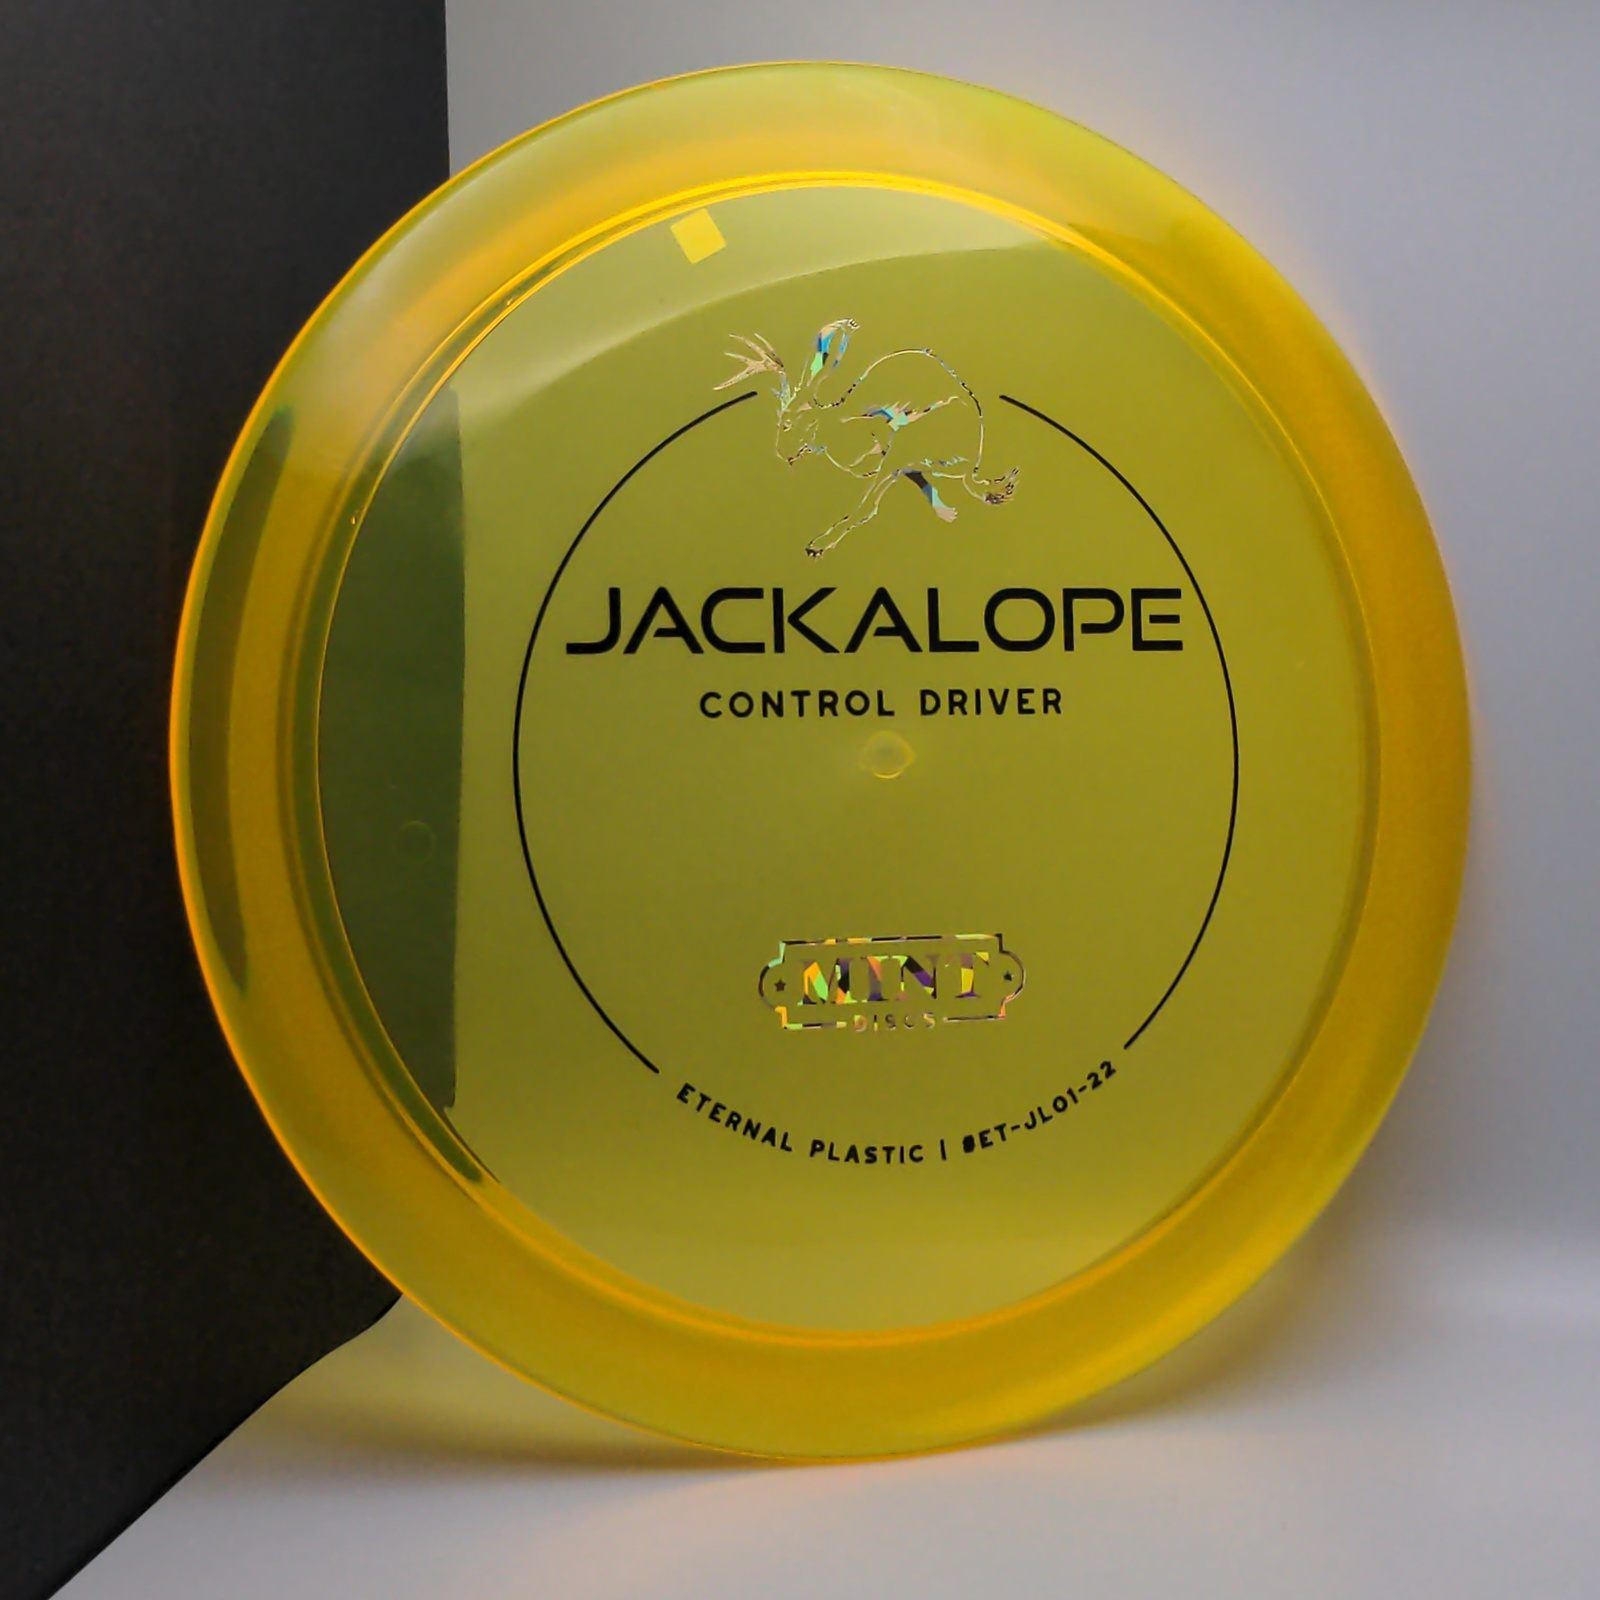 Eternal Jackalope First Run MINT Discs